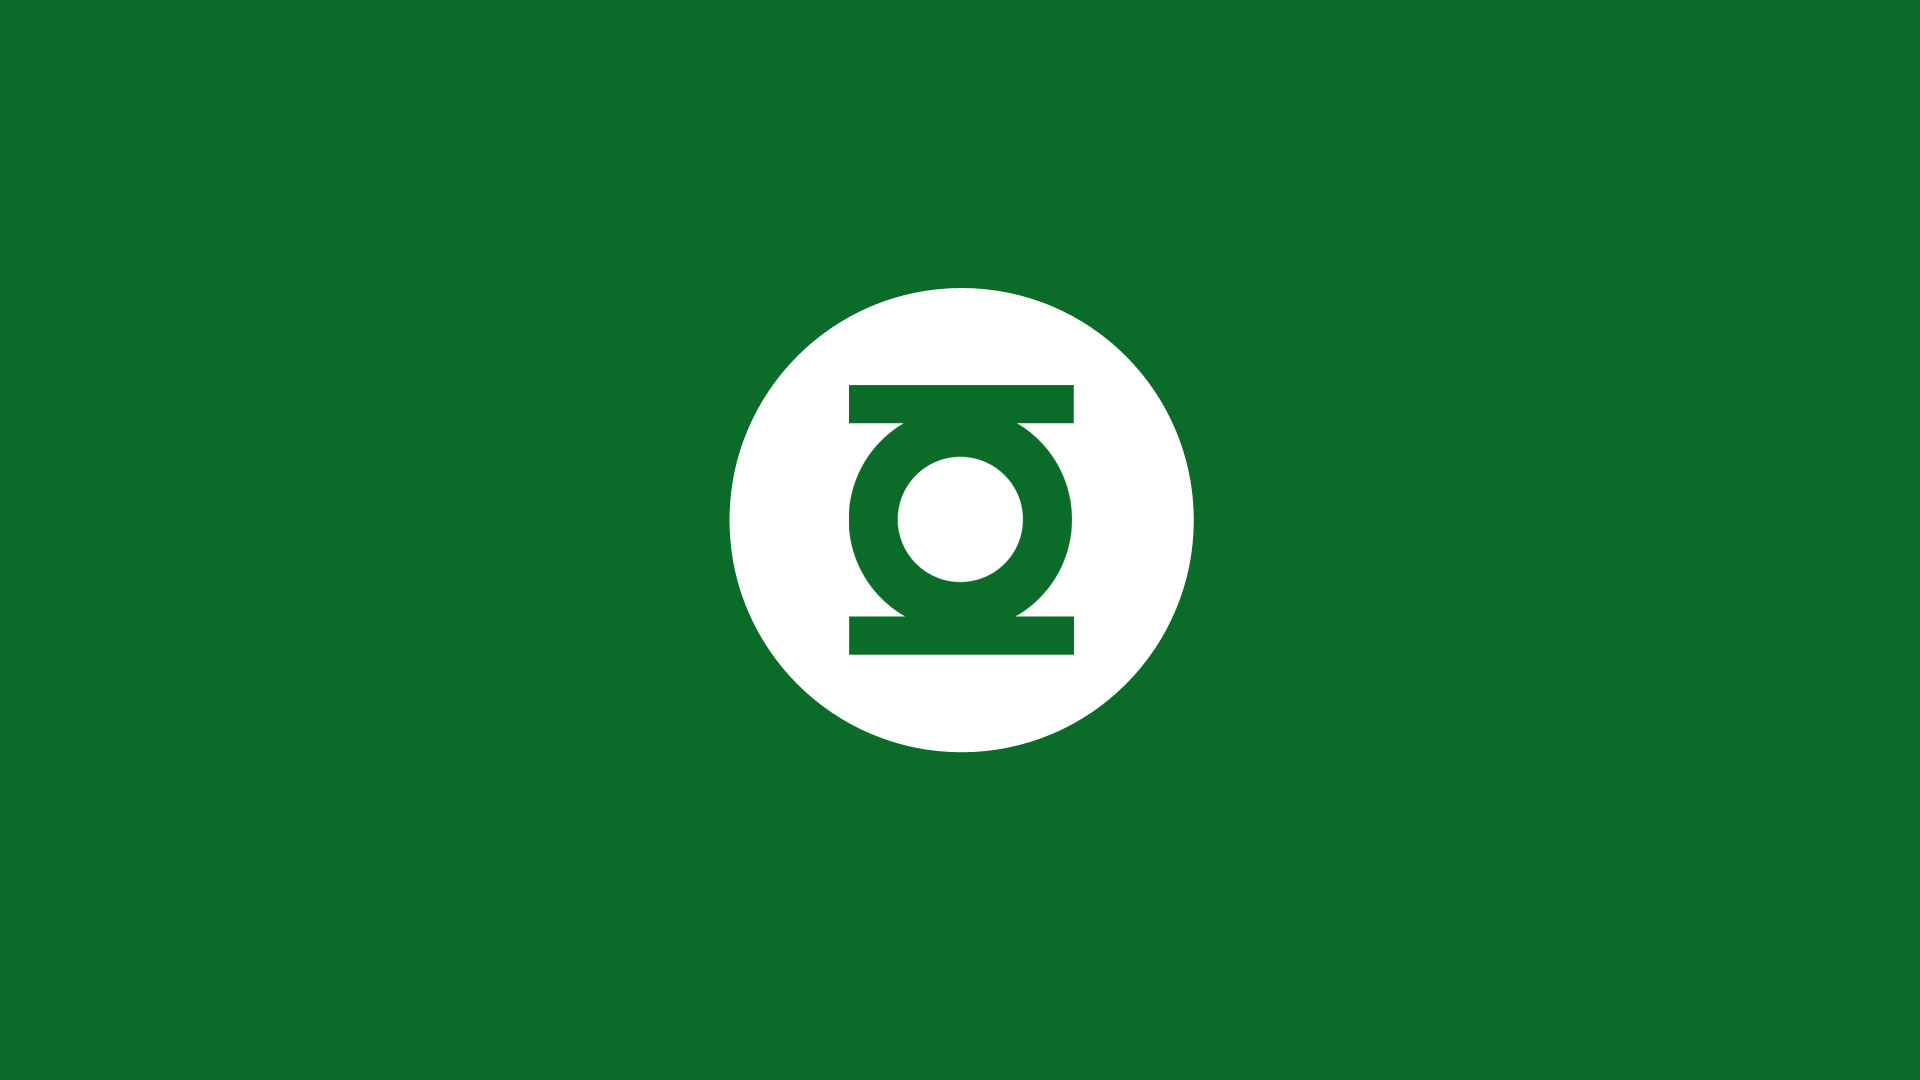 1920x1080 Green Lantern Logo Wallpaper